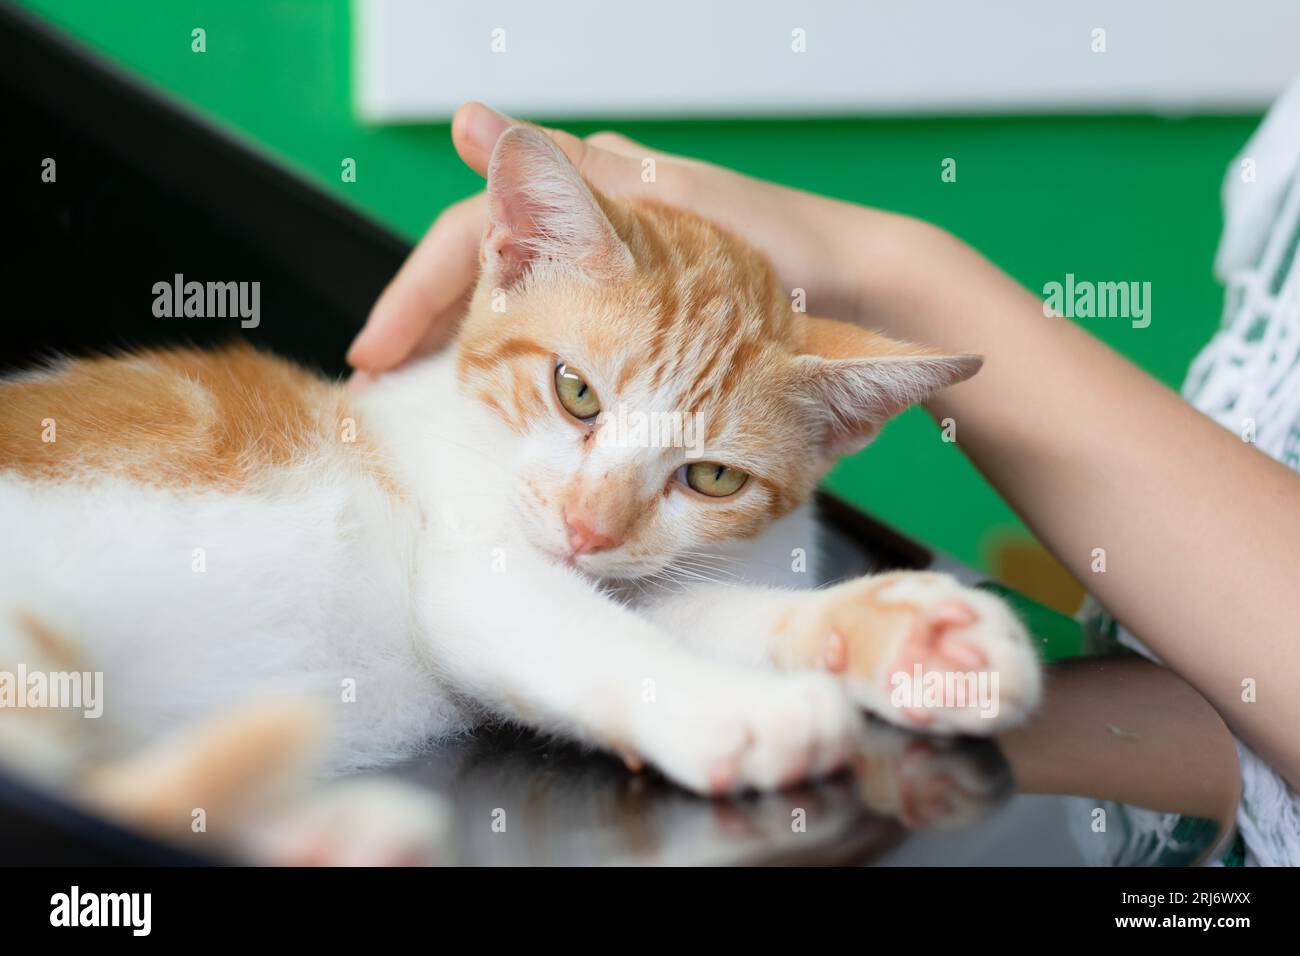 Wunderschönes Kätzchen, das die Zärtlichkeiten seines Menschen genießt. Männliche Hand streichelt Katzenhand, Nahaufnahme. Haustieren. Stockfoto